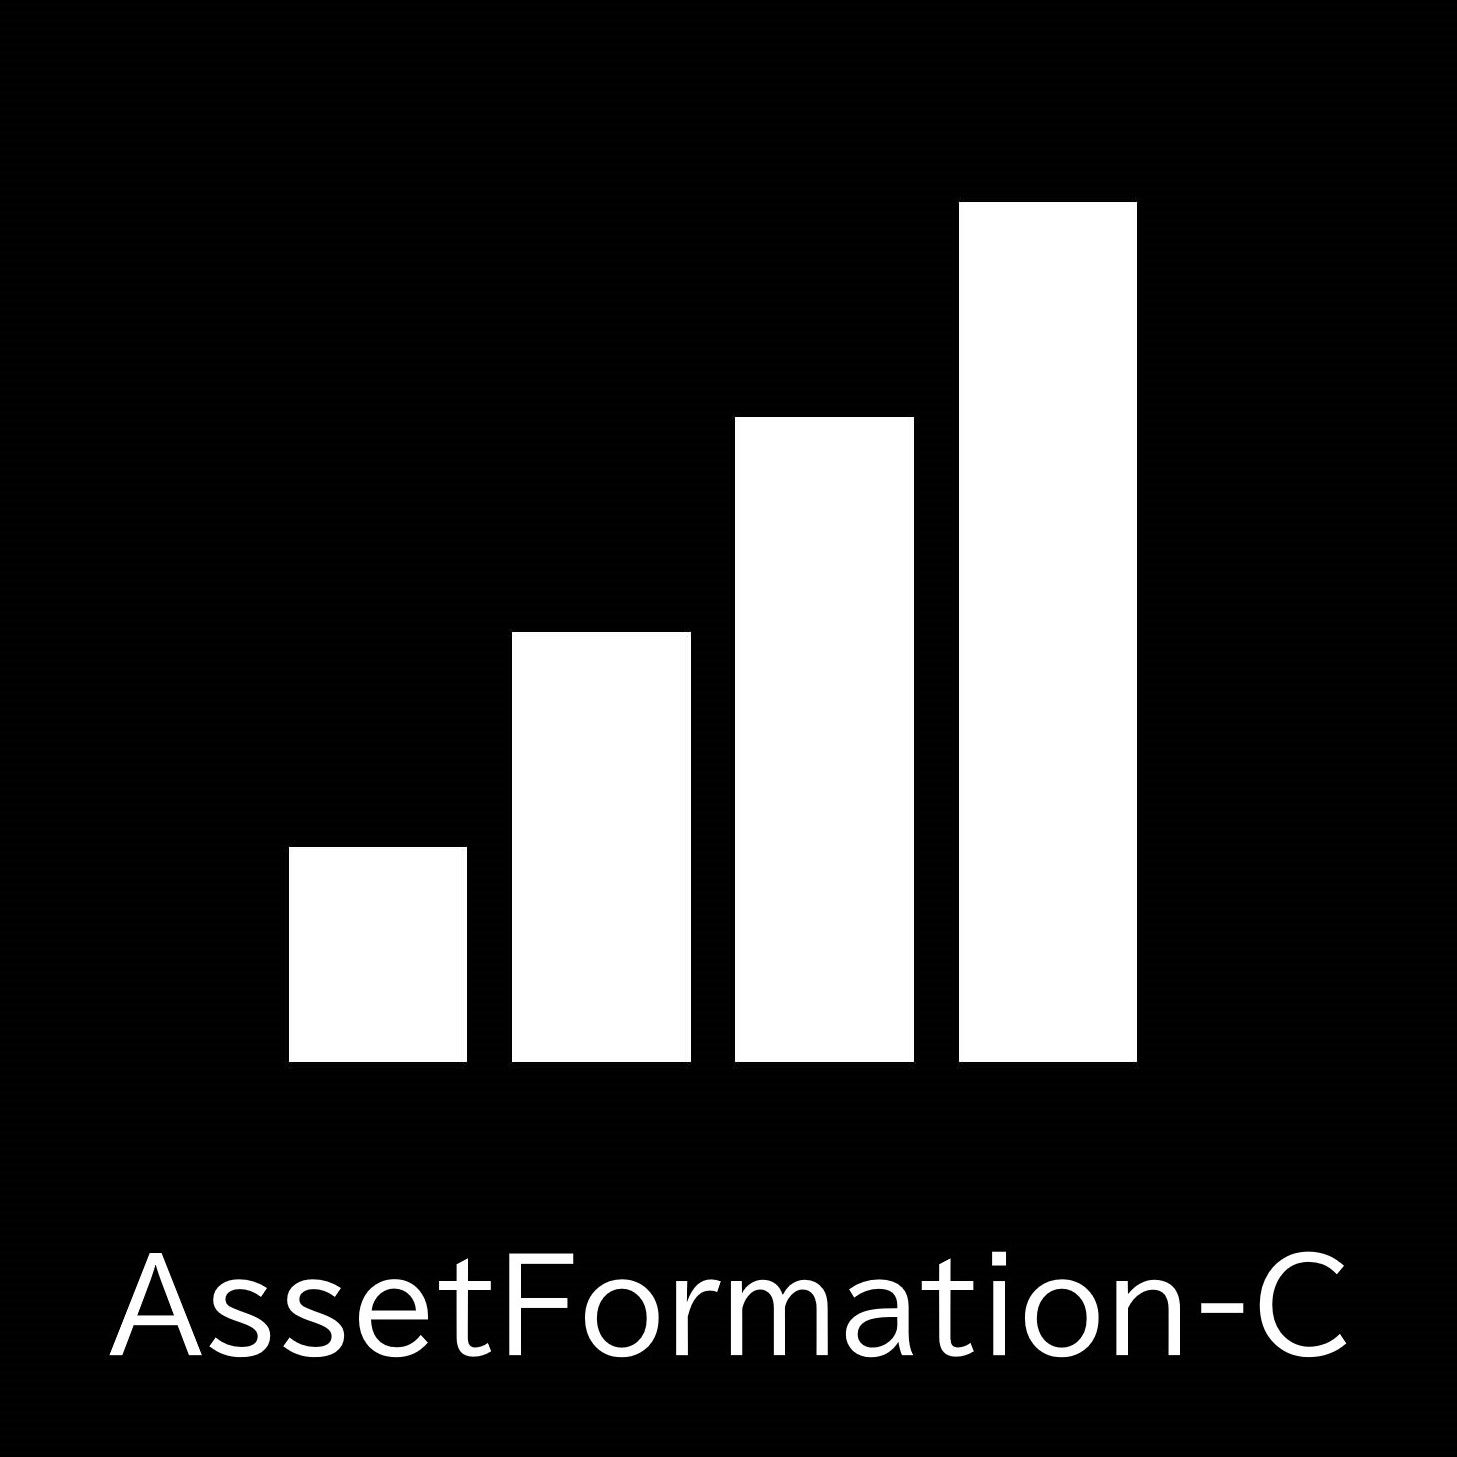 AssetFormation-C 自動売買